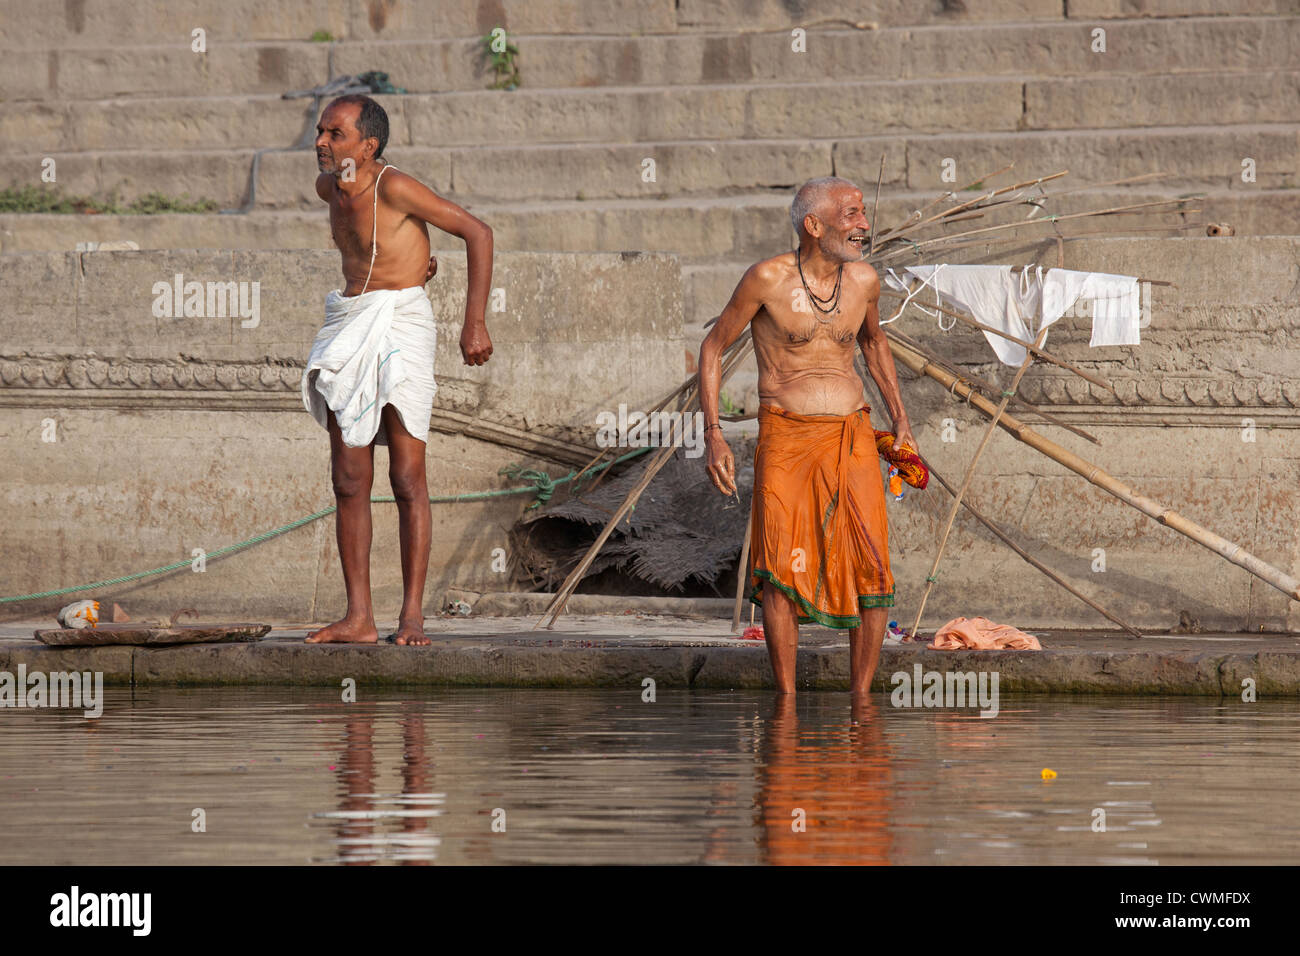 Indian men washing at a ghat along the holy Ganges river, Varanasi, Uttar Pradesh, India Stock Photo